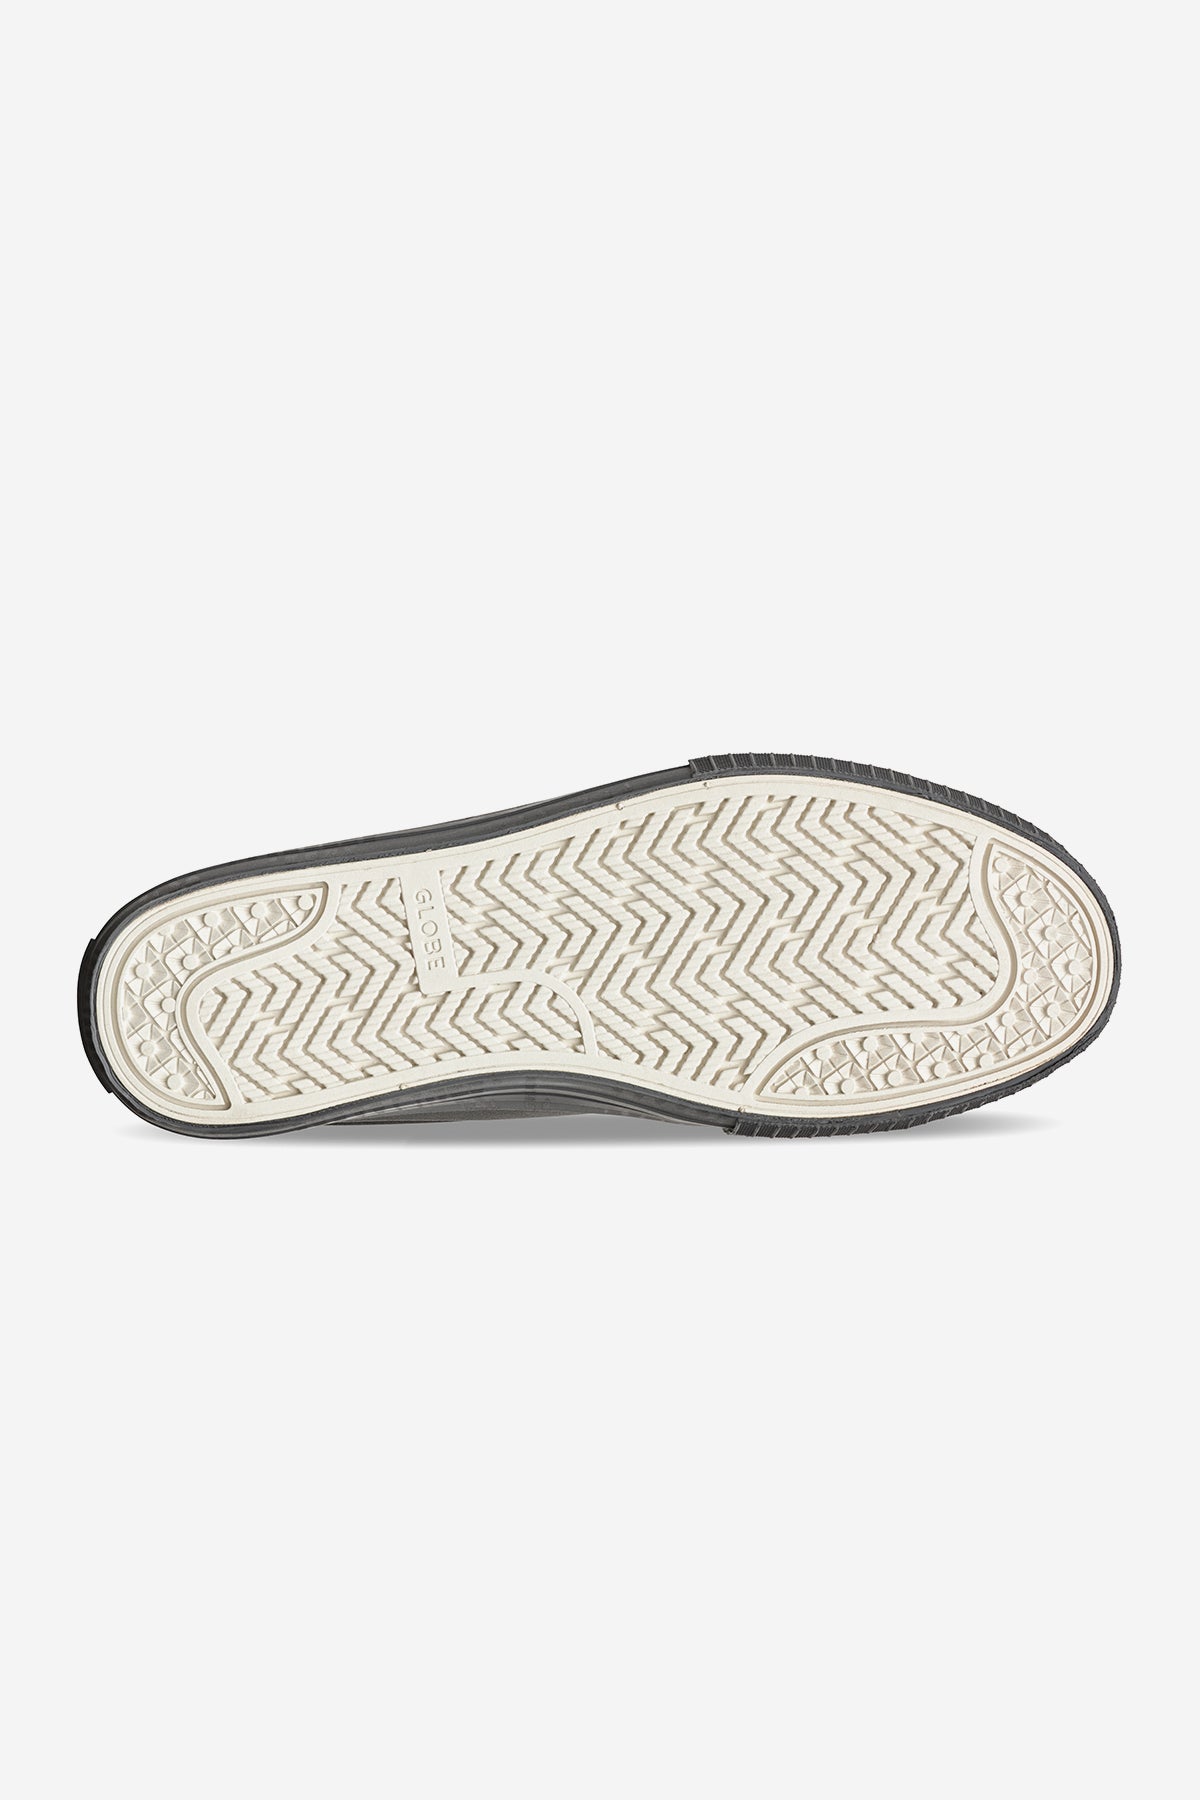 scarpe gillette mid graphite ex skateboard